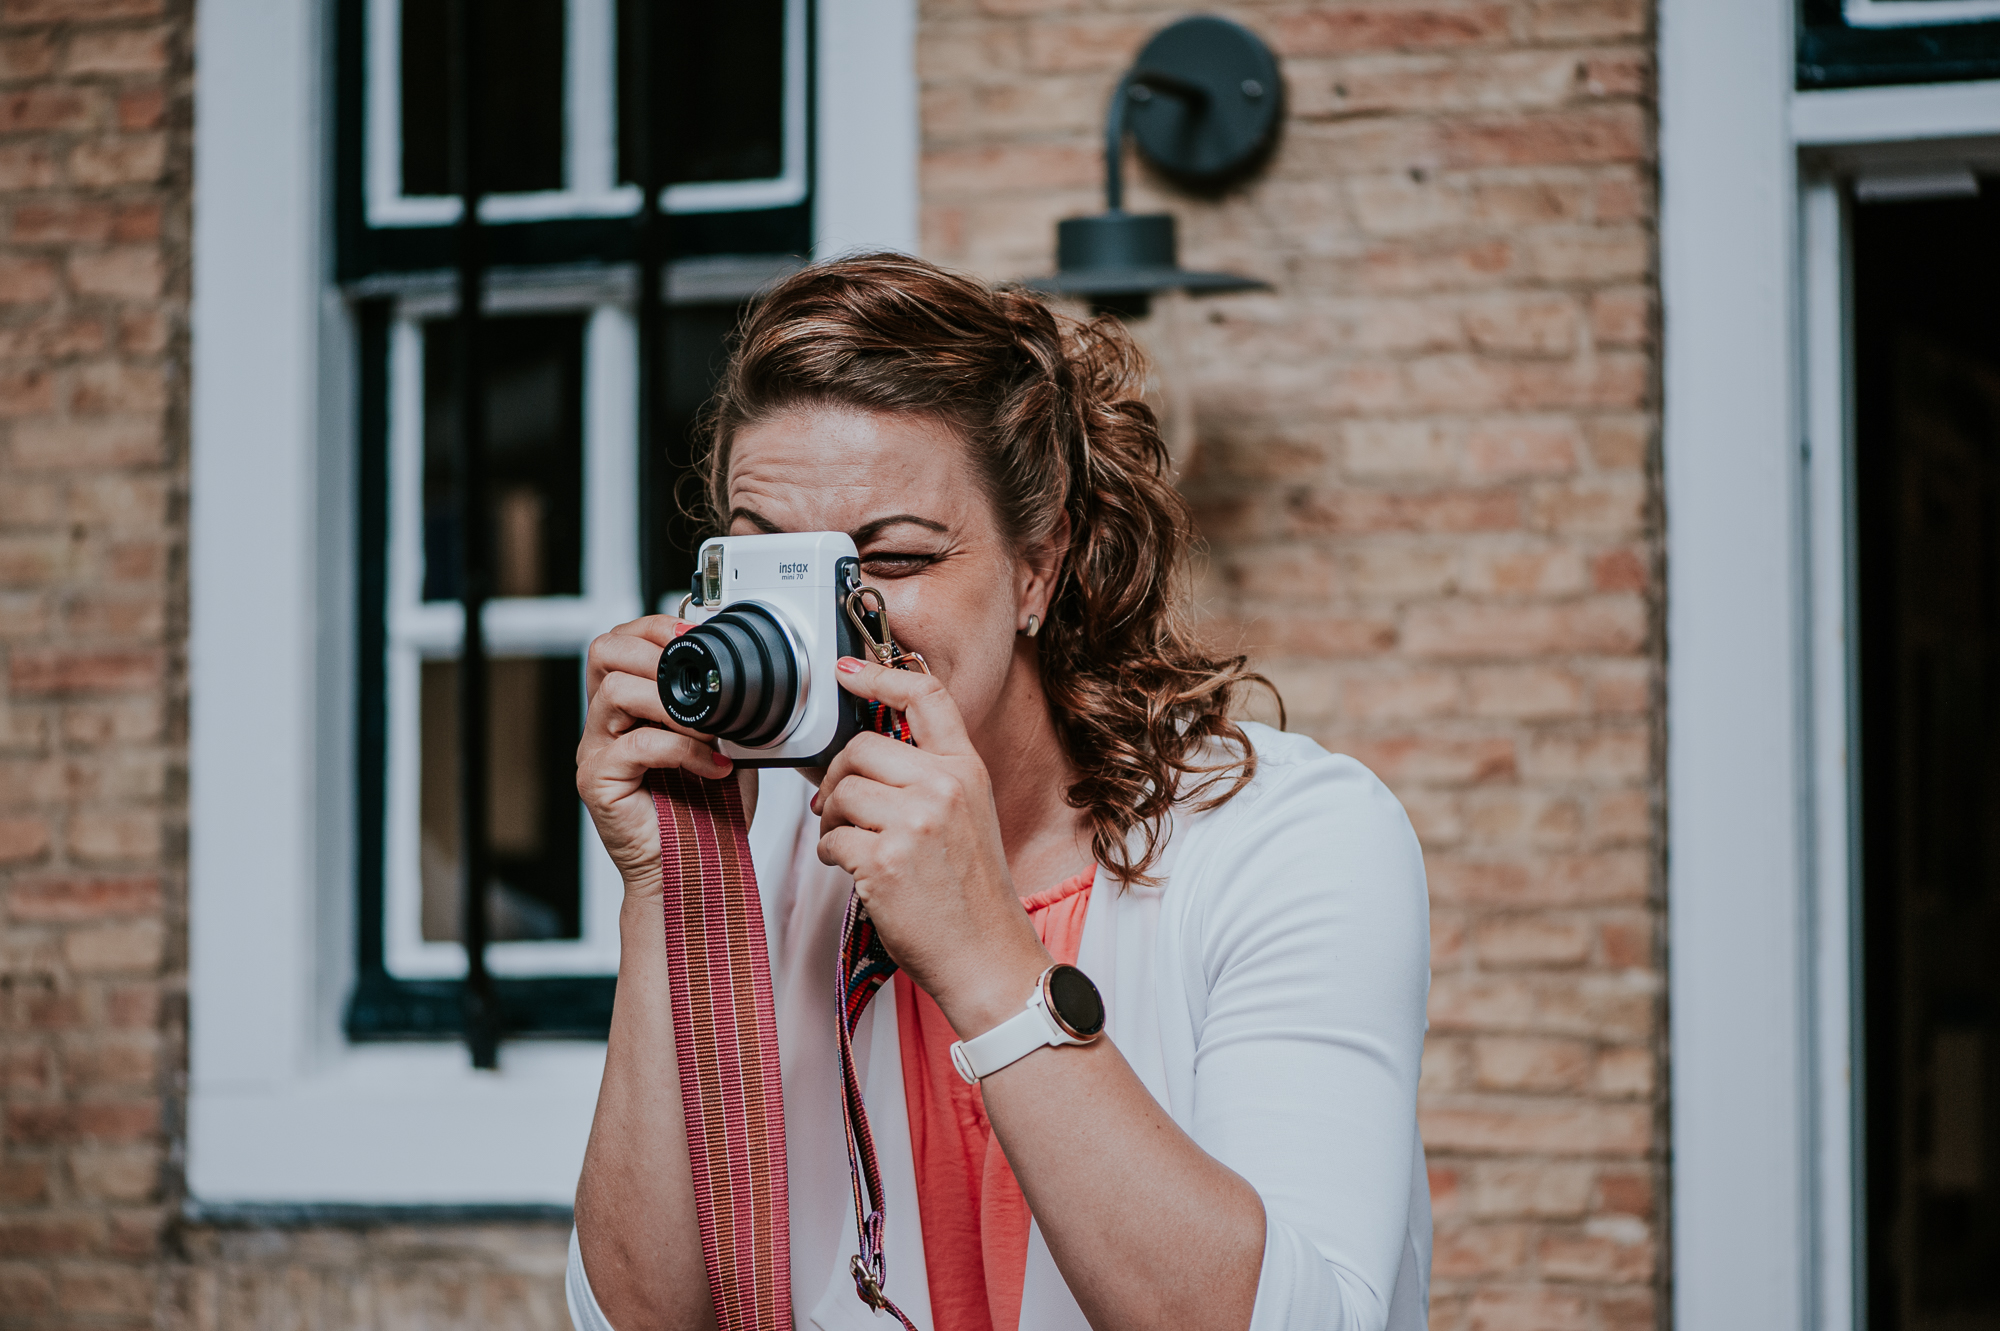 Foto's maken van de daggasten met een polaroid camera tijdens de huwelijksborrel. Trouwreportage door trouwfotograaf Nickie Fotografie uit Dokkum, Friesland.